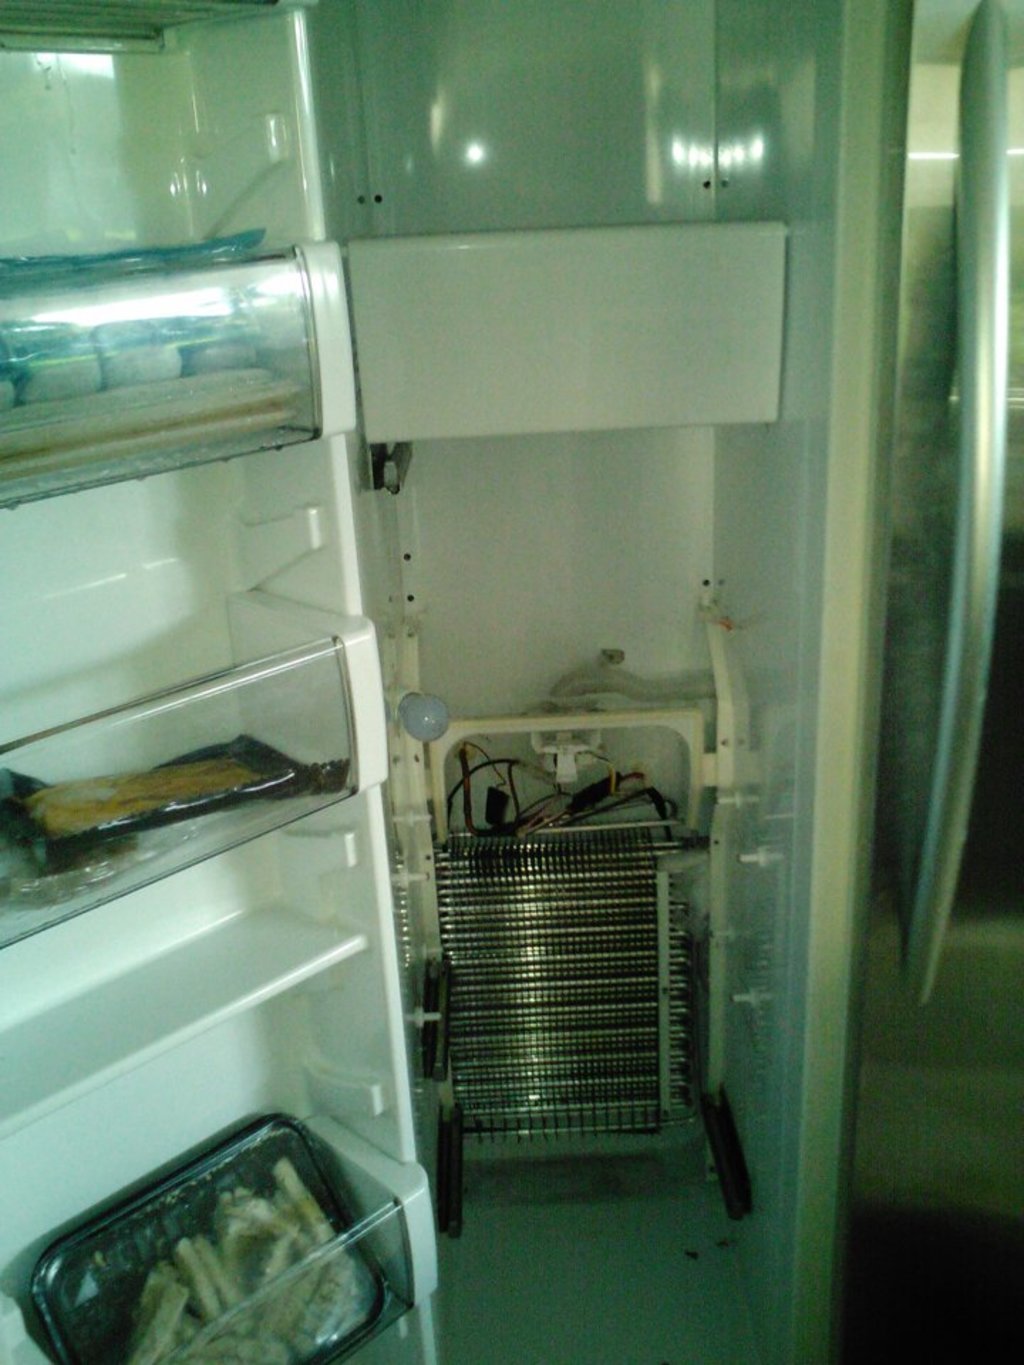 Advancetech Appliance Service - Broken Refrigerator